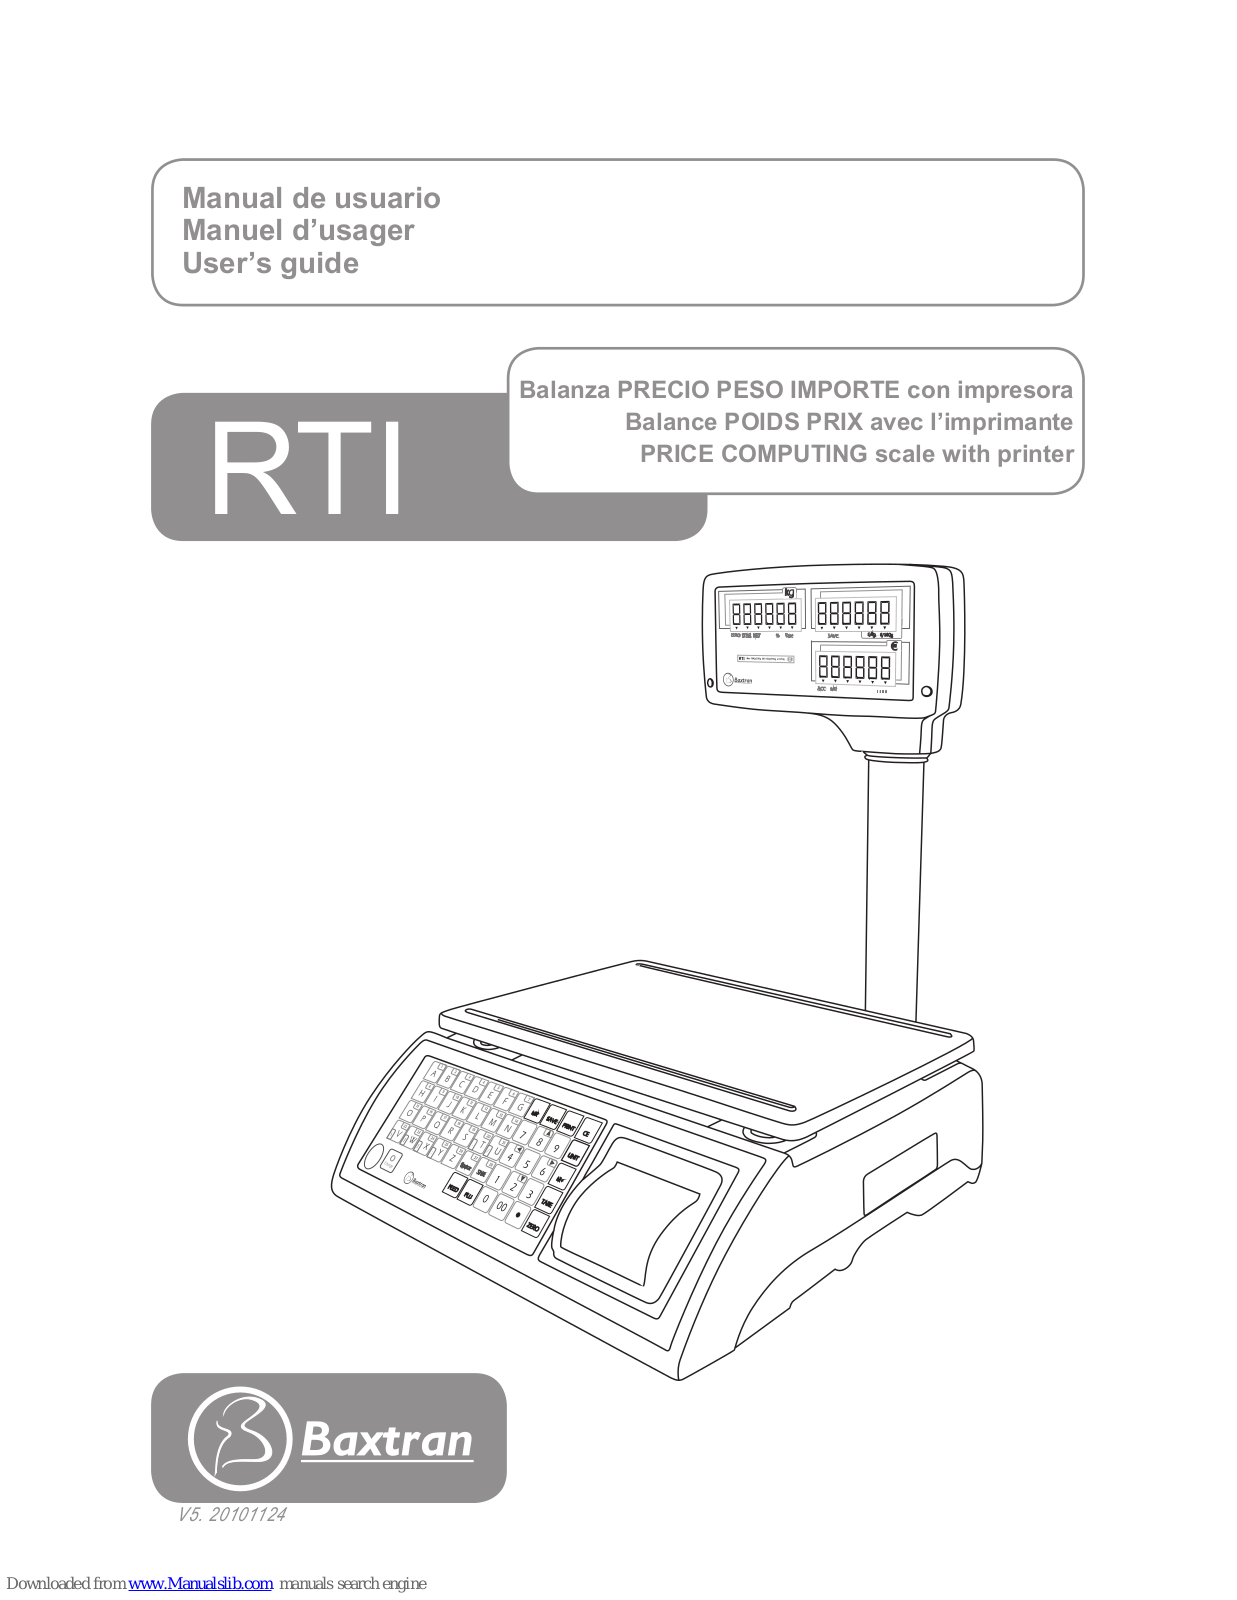 Baxtran RTI User Manual